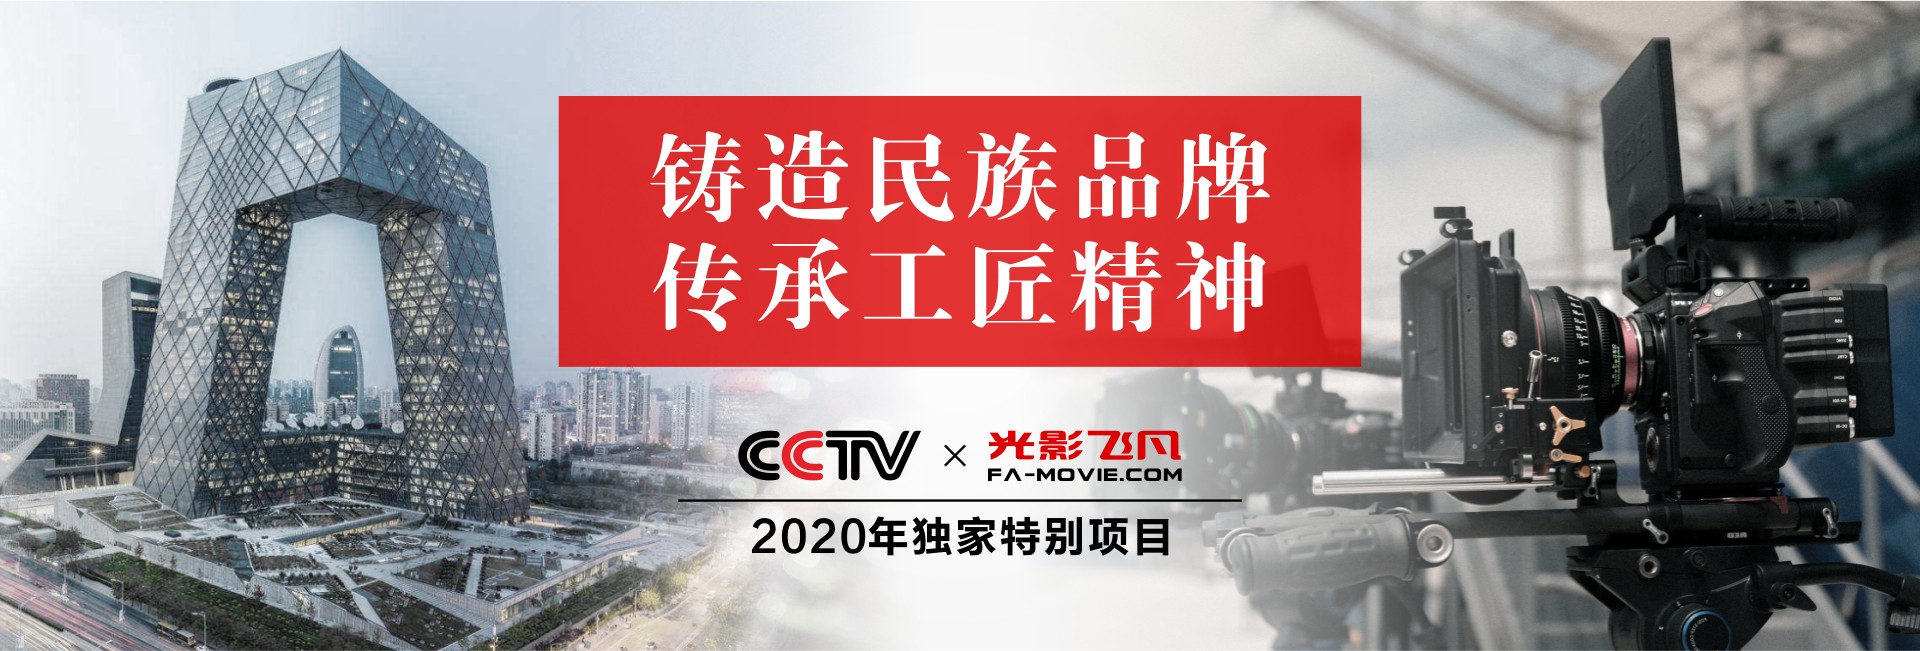 2020年CCTV獨家特別項目-001.jpg